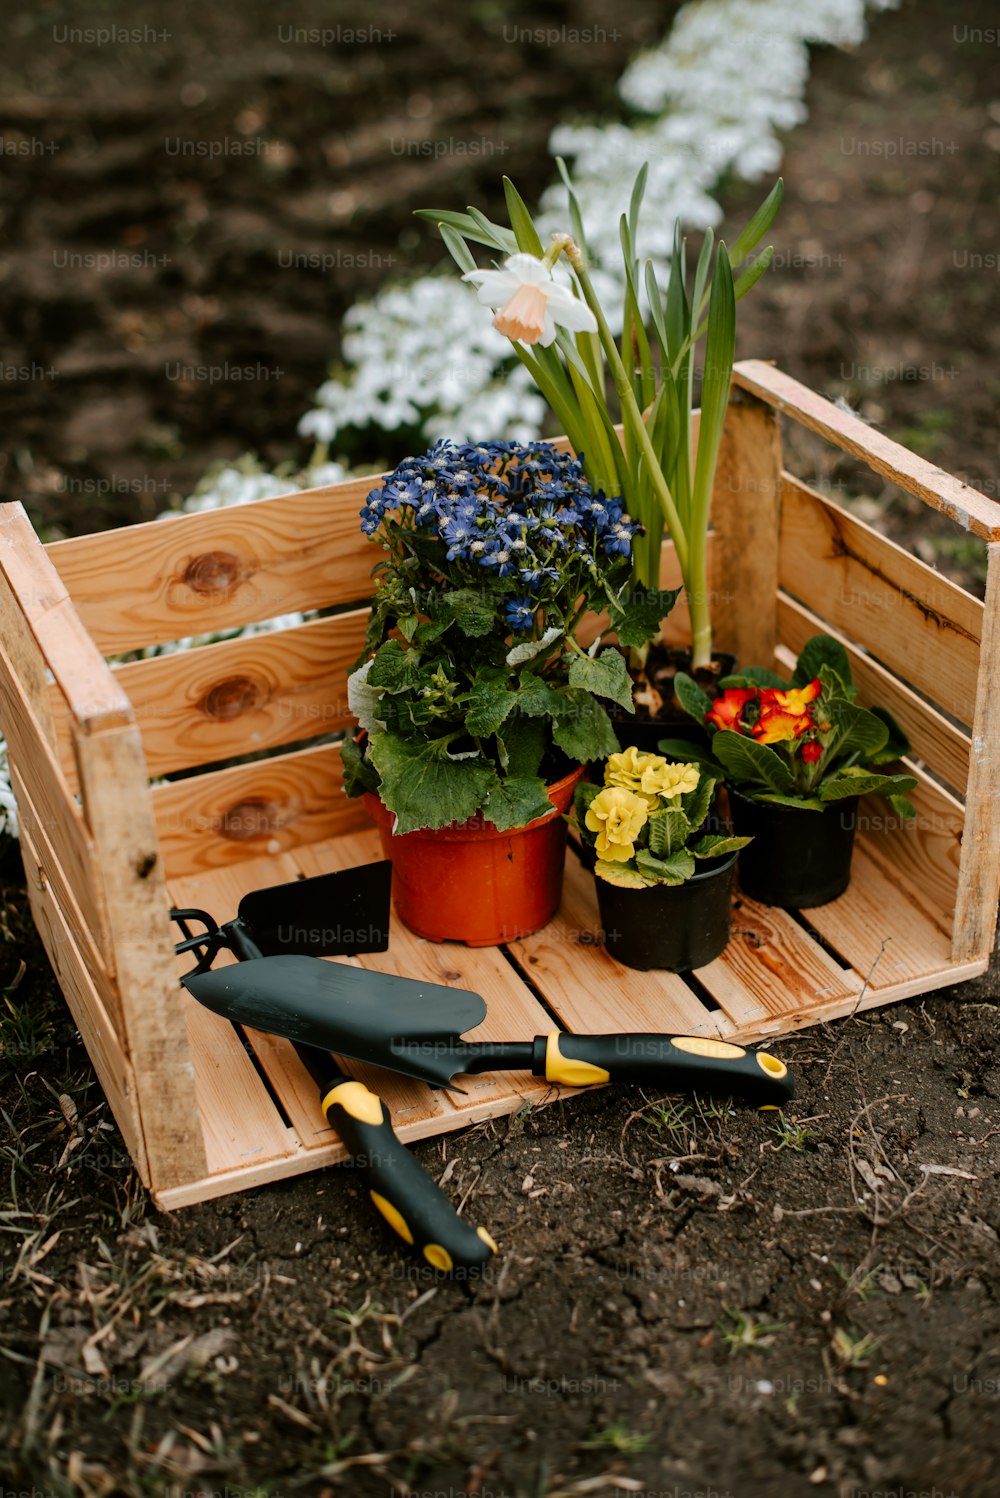 una caja de madera llena de flores y herramientas de jardinería